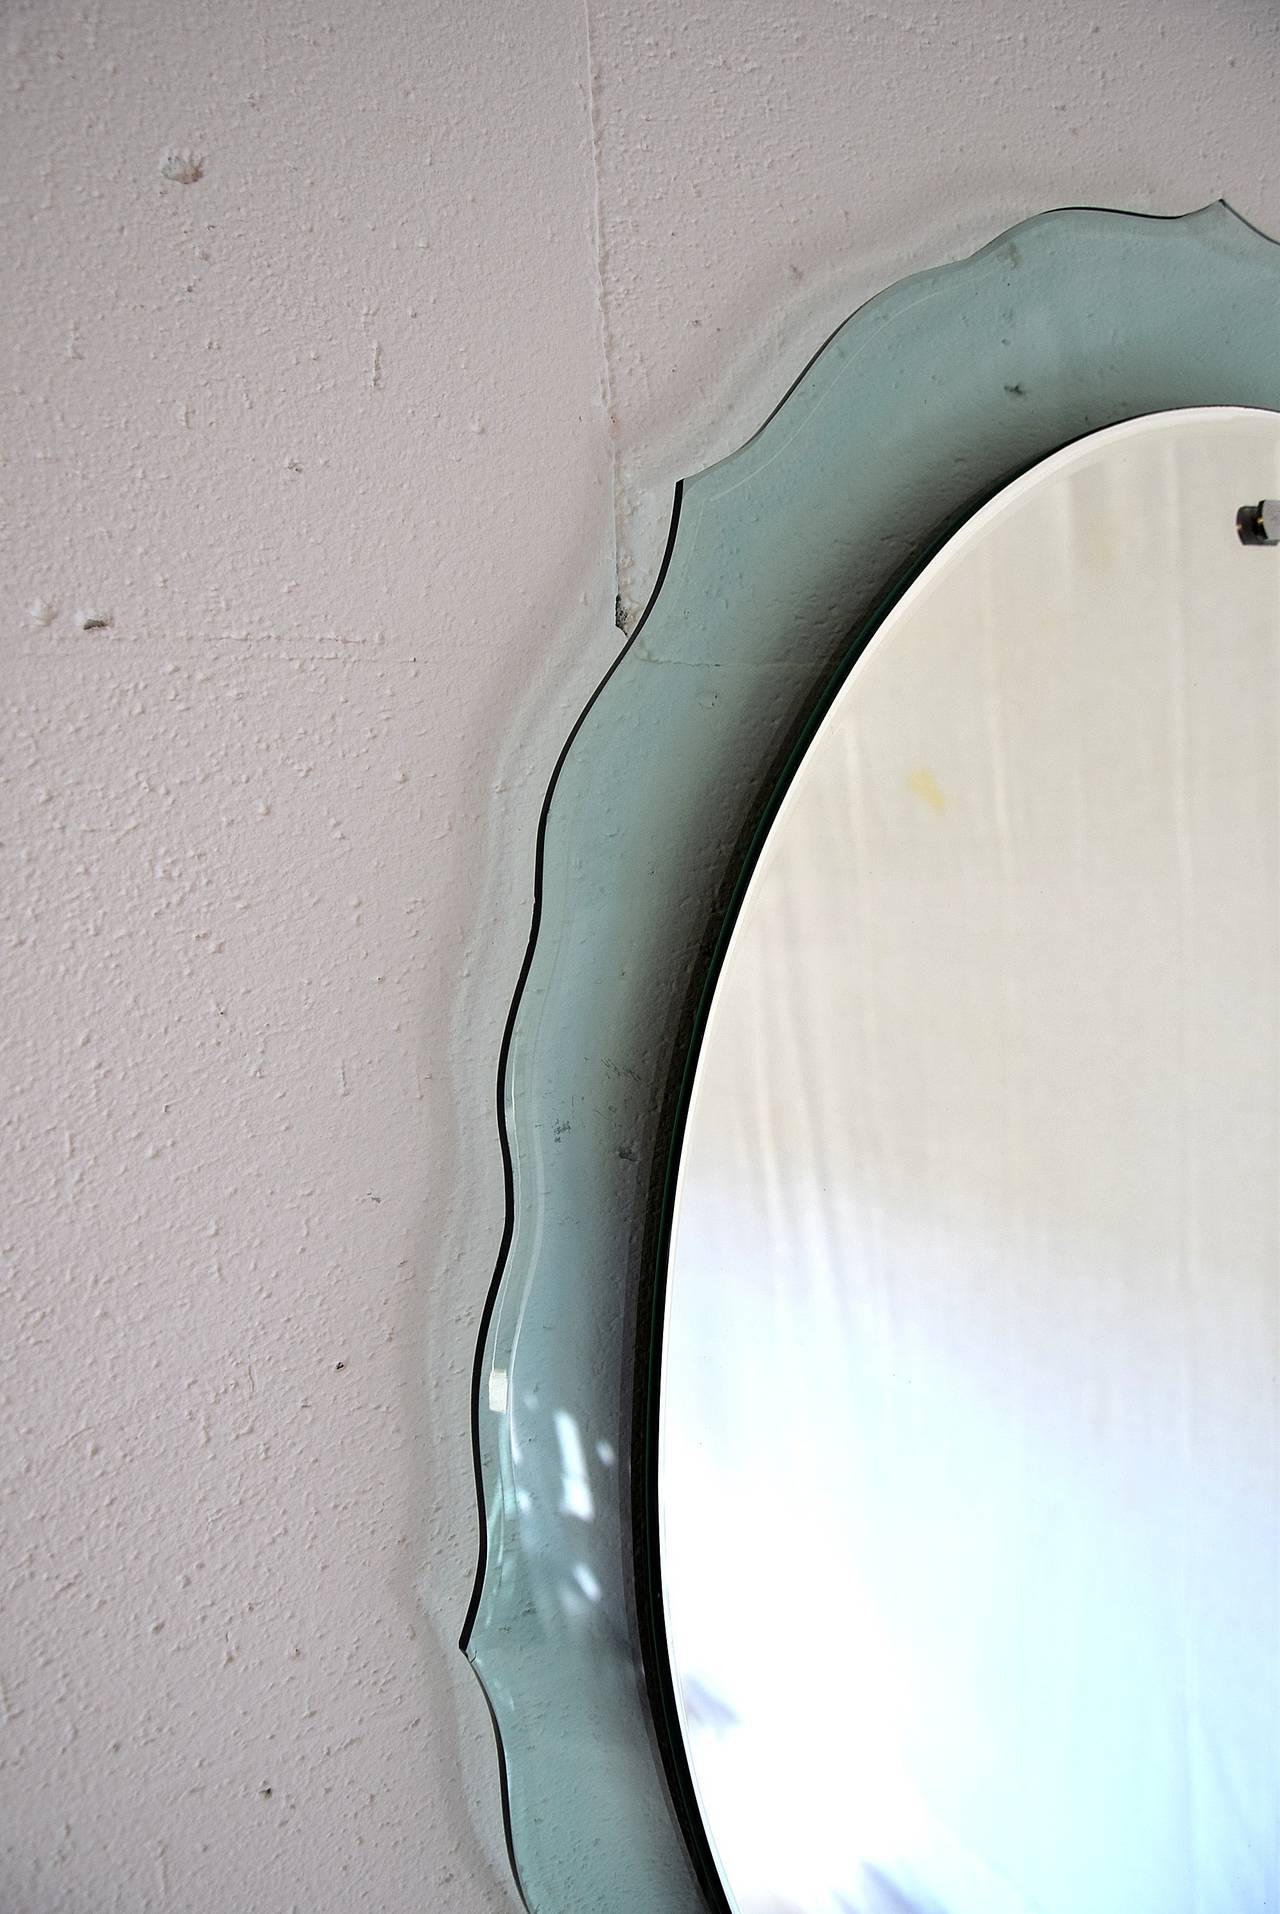 Italienischer Mid-Century Modern Wandspiegel
Eleganter und raffinierter Wandspiegel aus den 1950er Jahren mit einer schönen aquamaringrünen Bordüre.
Abmessungen: H 74 x B 58 cm.

Der Spiegel wird in einer maßgefertigten Holzkiste ins Ausland